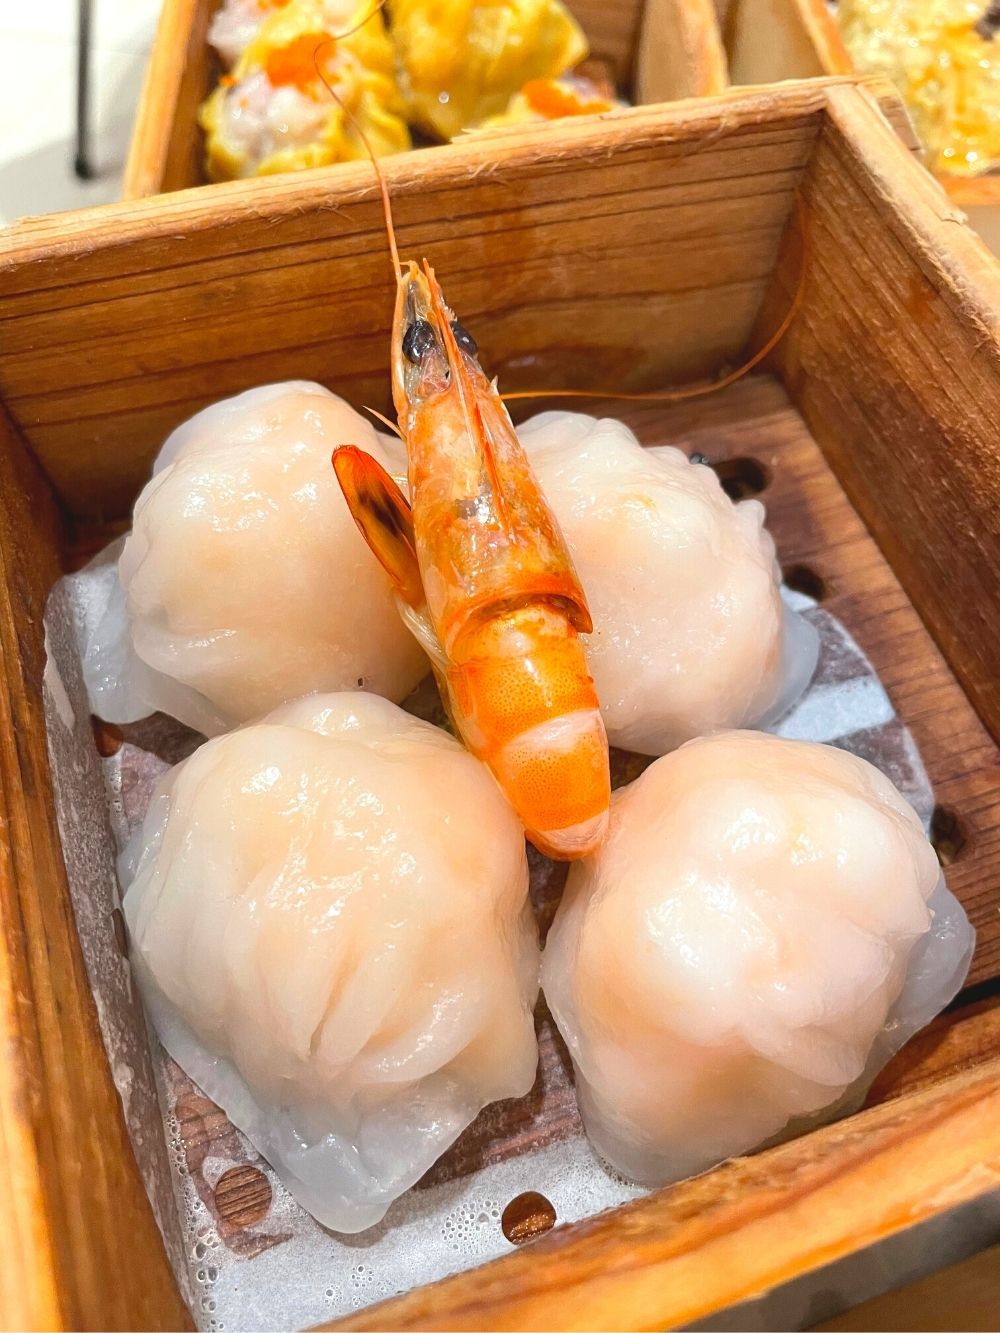 Yu-seafood-steamed-shrimp-dumpling-har-gow